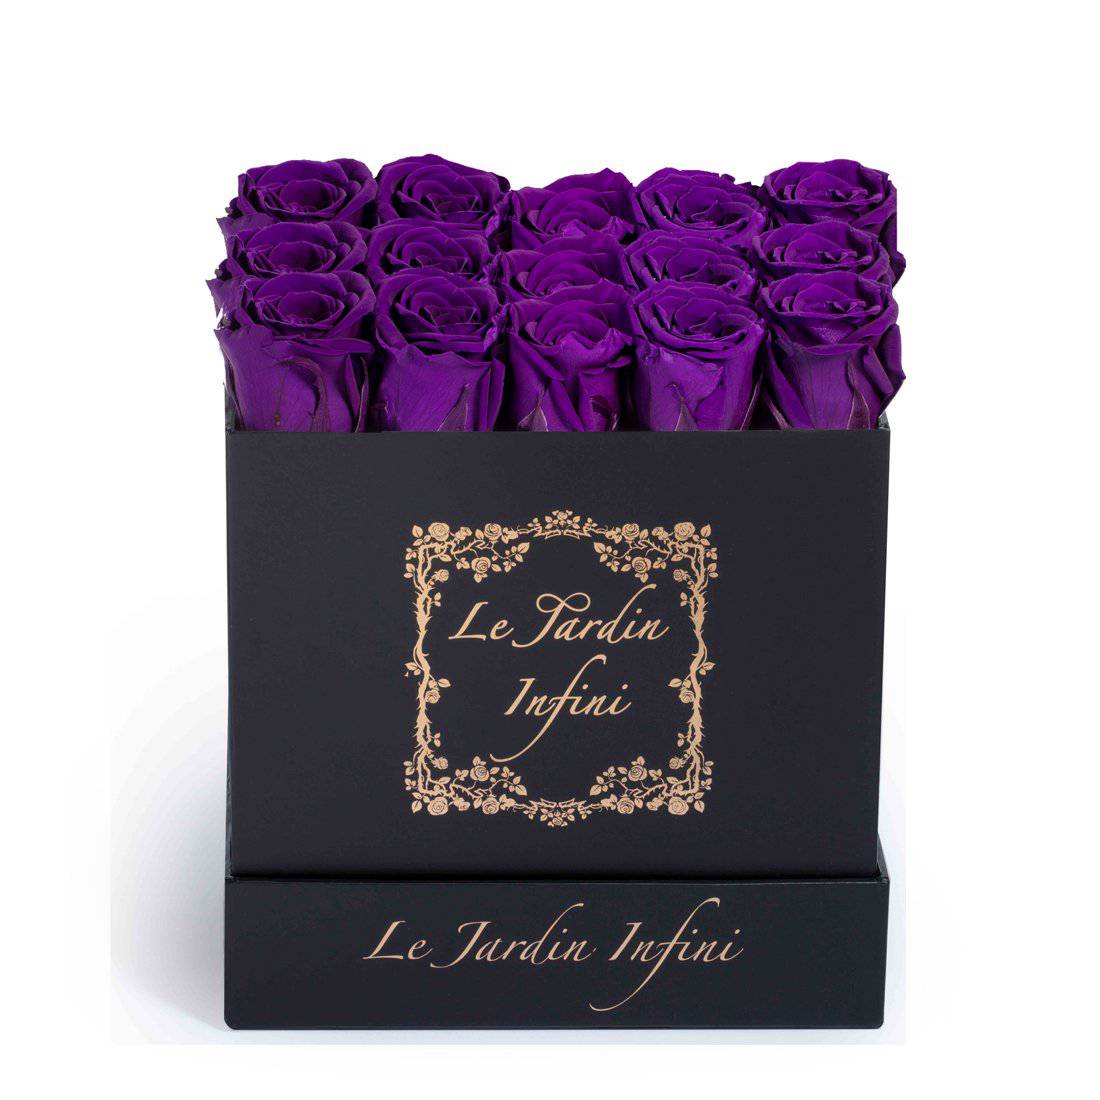 Vibrant Purple Preserved Roses - Medium Square Black Box